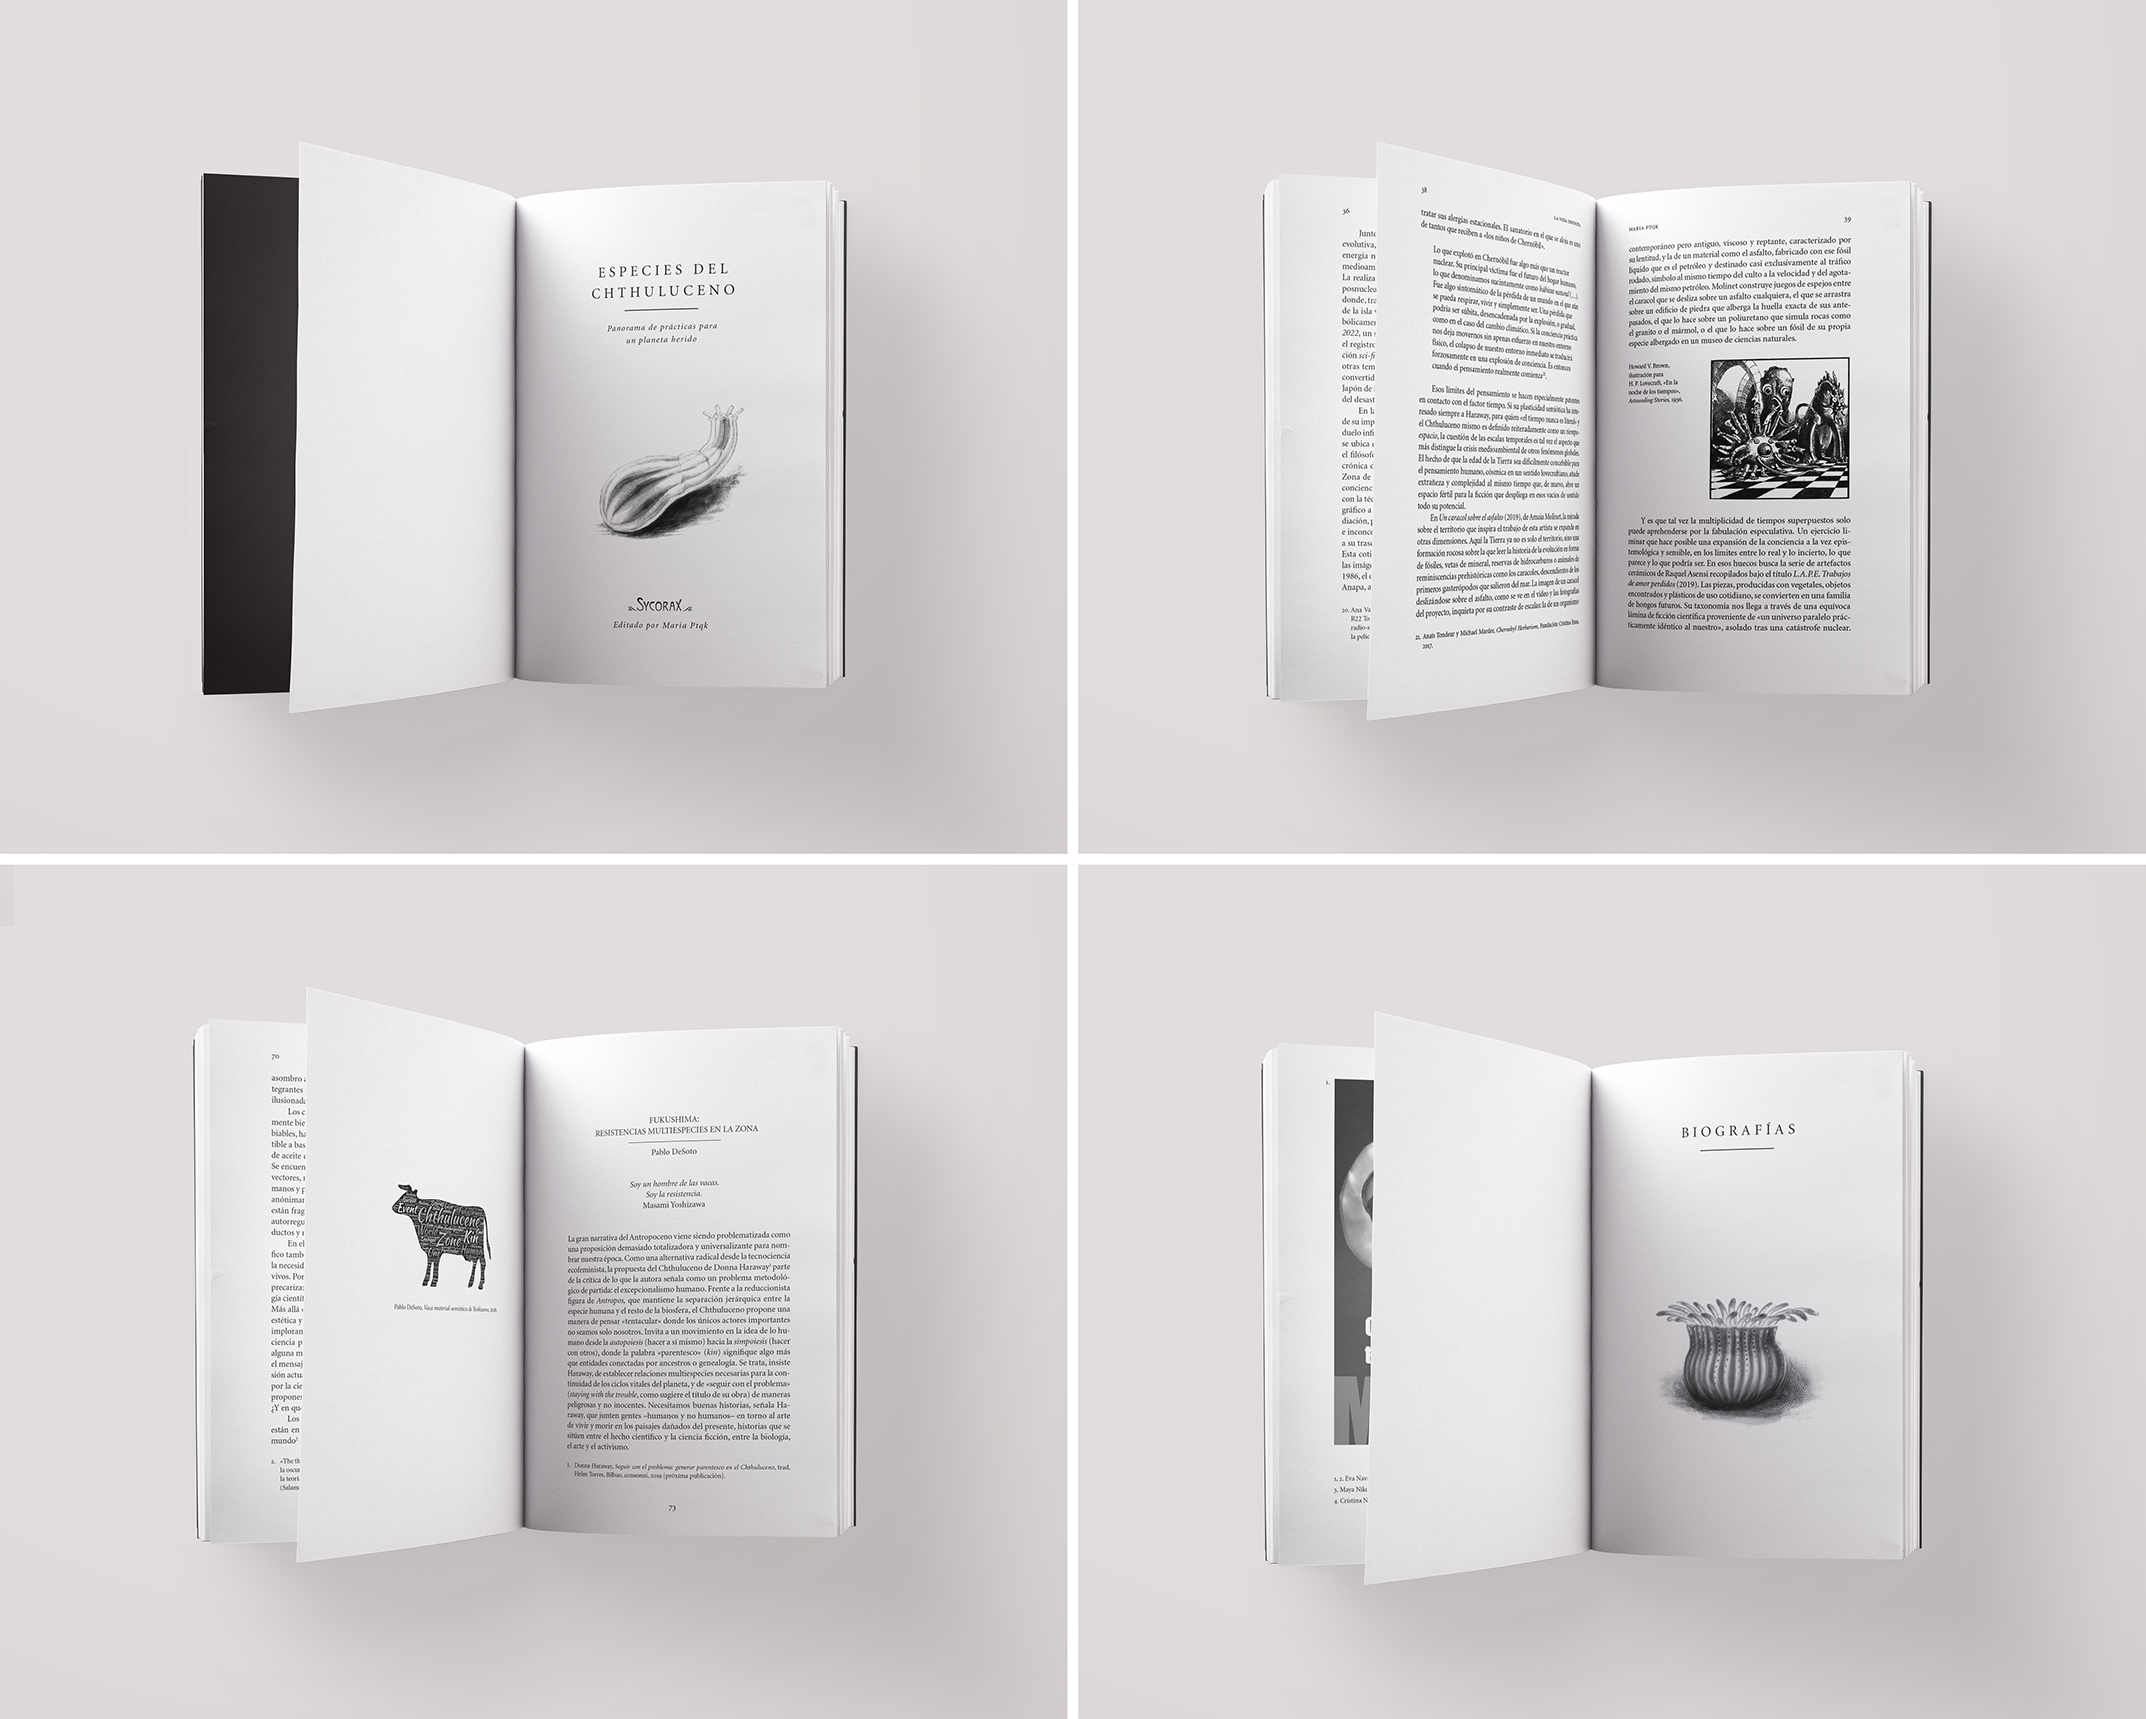 Diseño, maquetación e ilustraciones para “Especies del Chthuluceno” (Ensayo) by Nagore M. Jauregi - Creative Work - $i